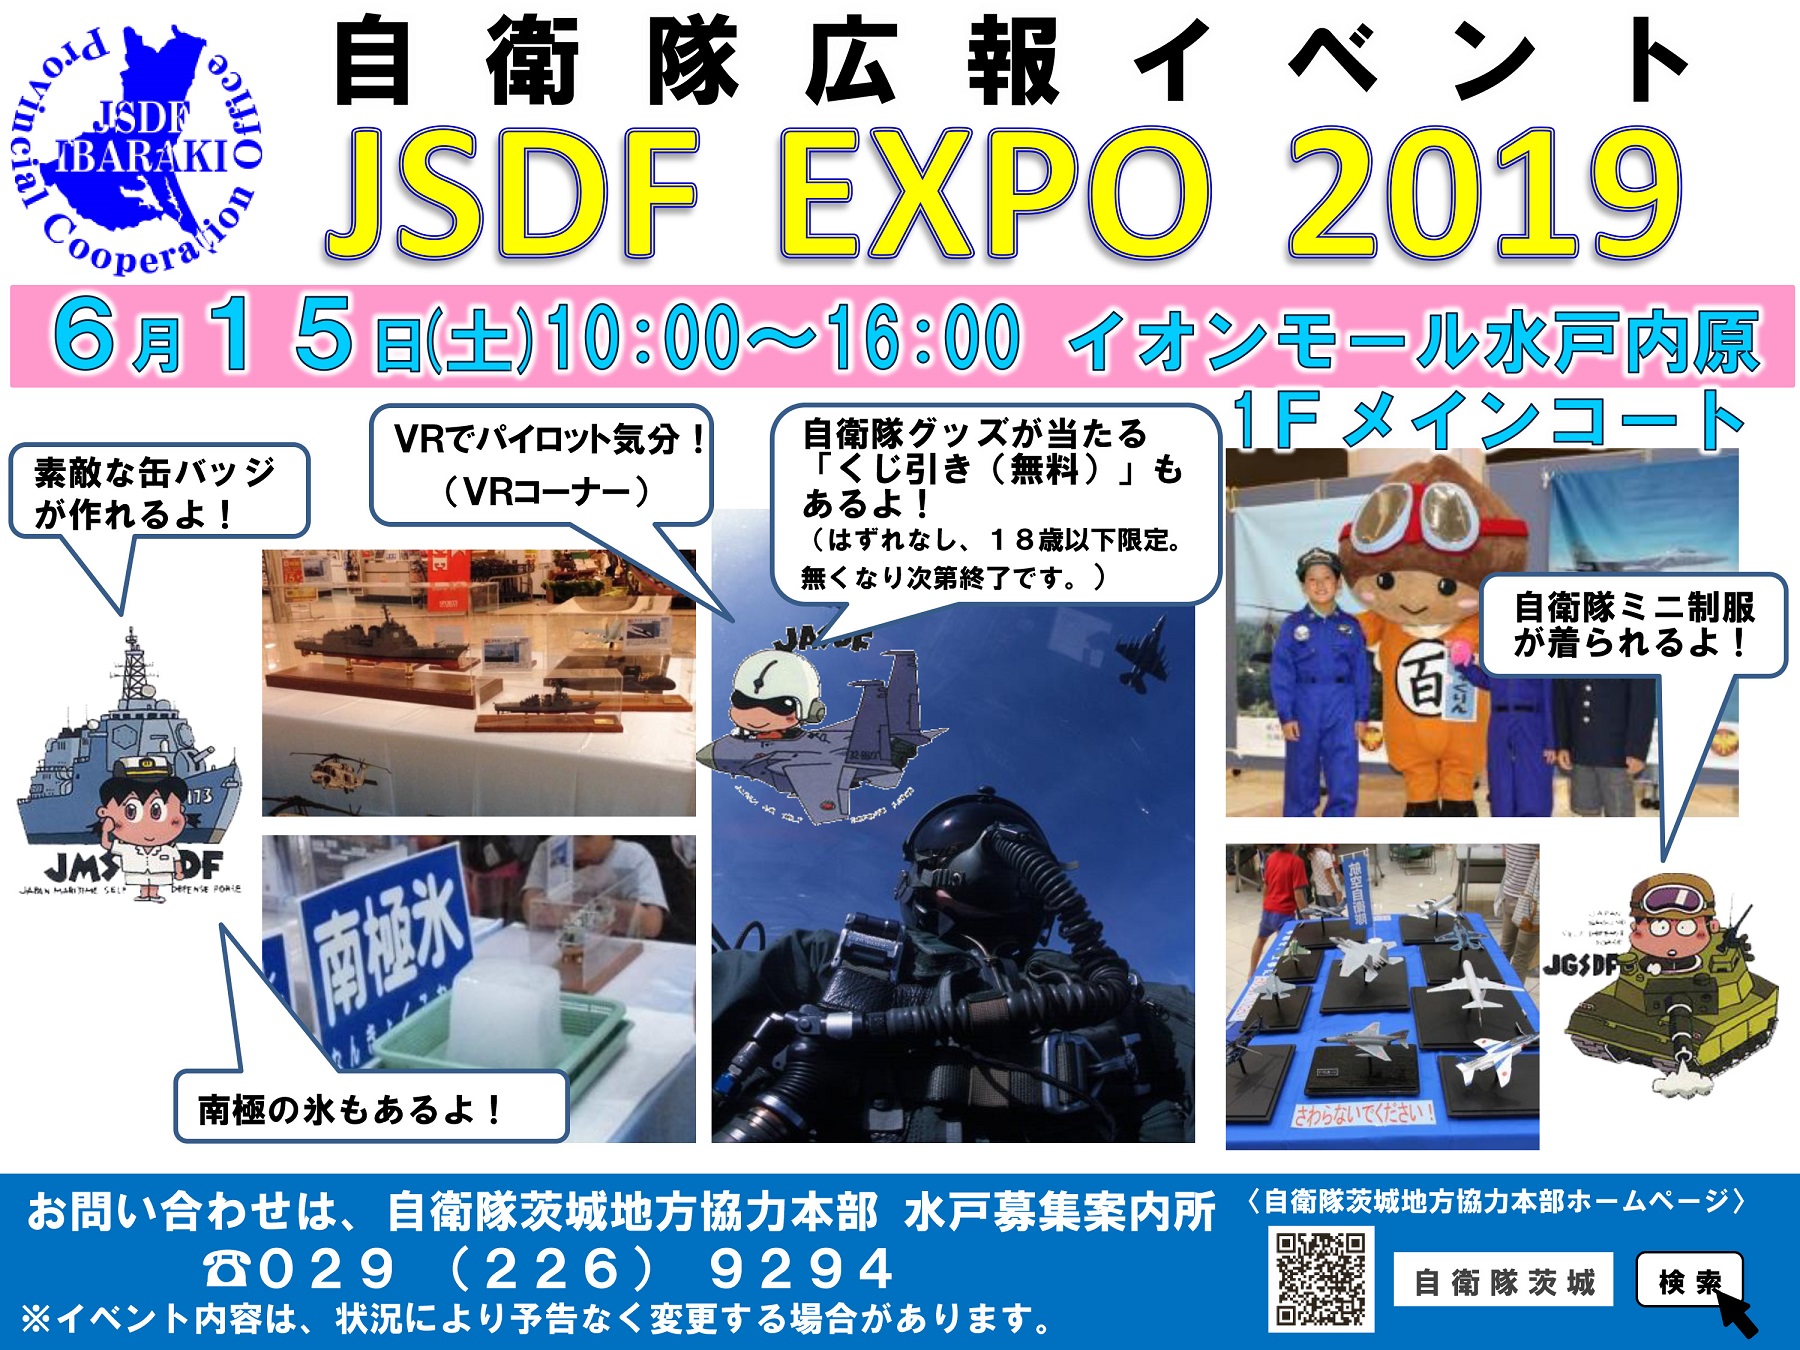 自衛隊広報イベント JSDF EXPO 2019リーフレット